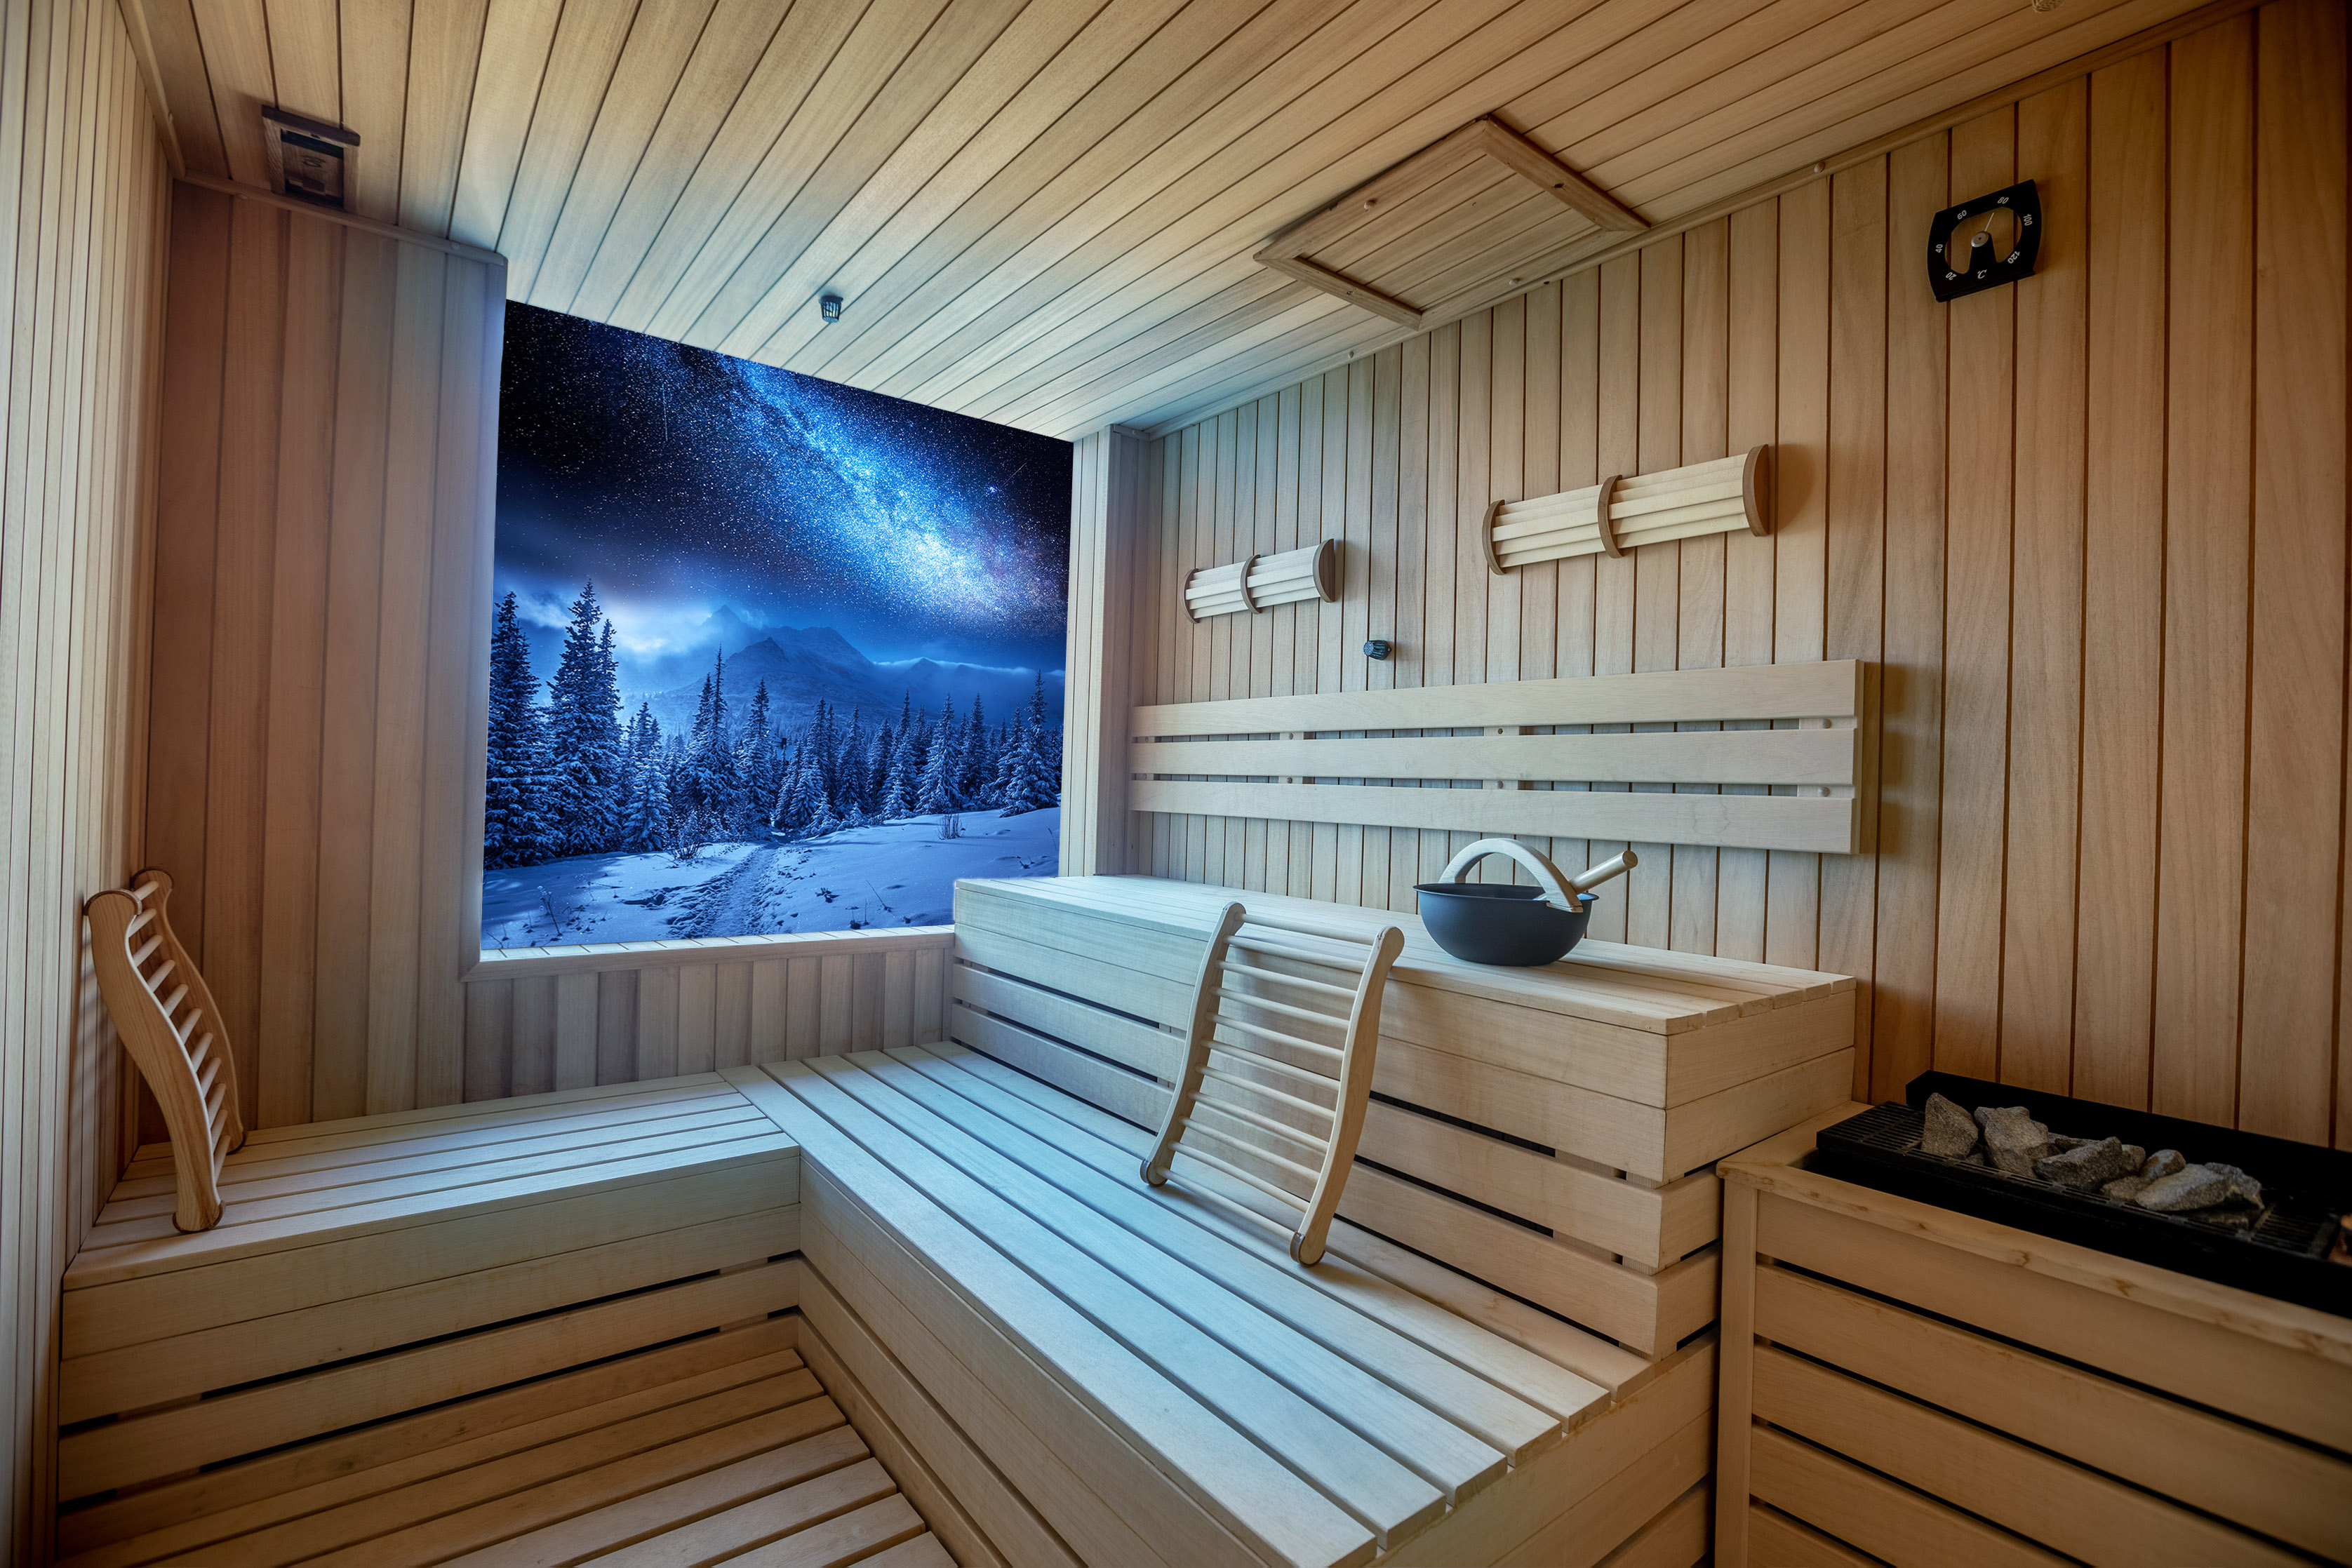 Dimmbare, hitzebeständige LED-Beleuchtung in einer Sauna: Das leuchtende LED-Motiv an der Wand wirkt wie ein Fenster zu einer Winterlandschaft.